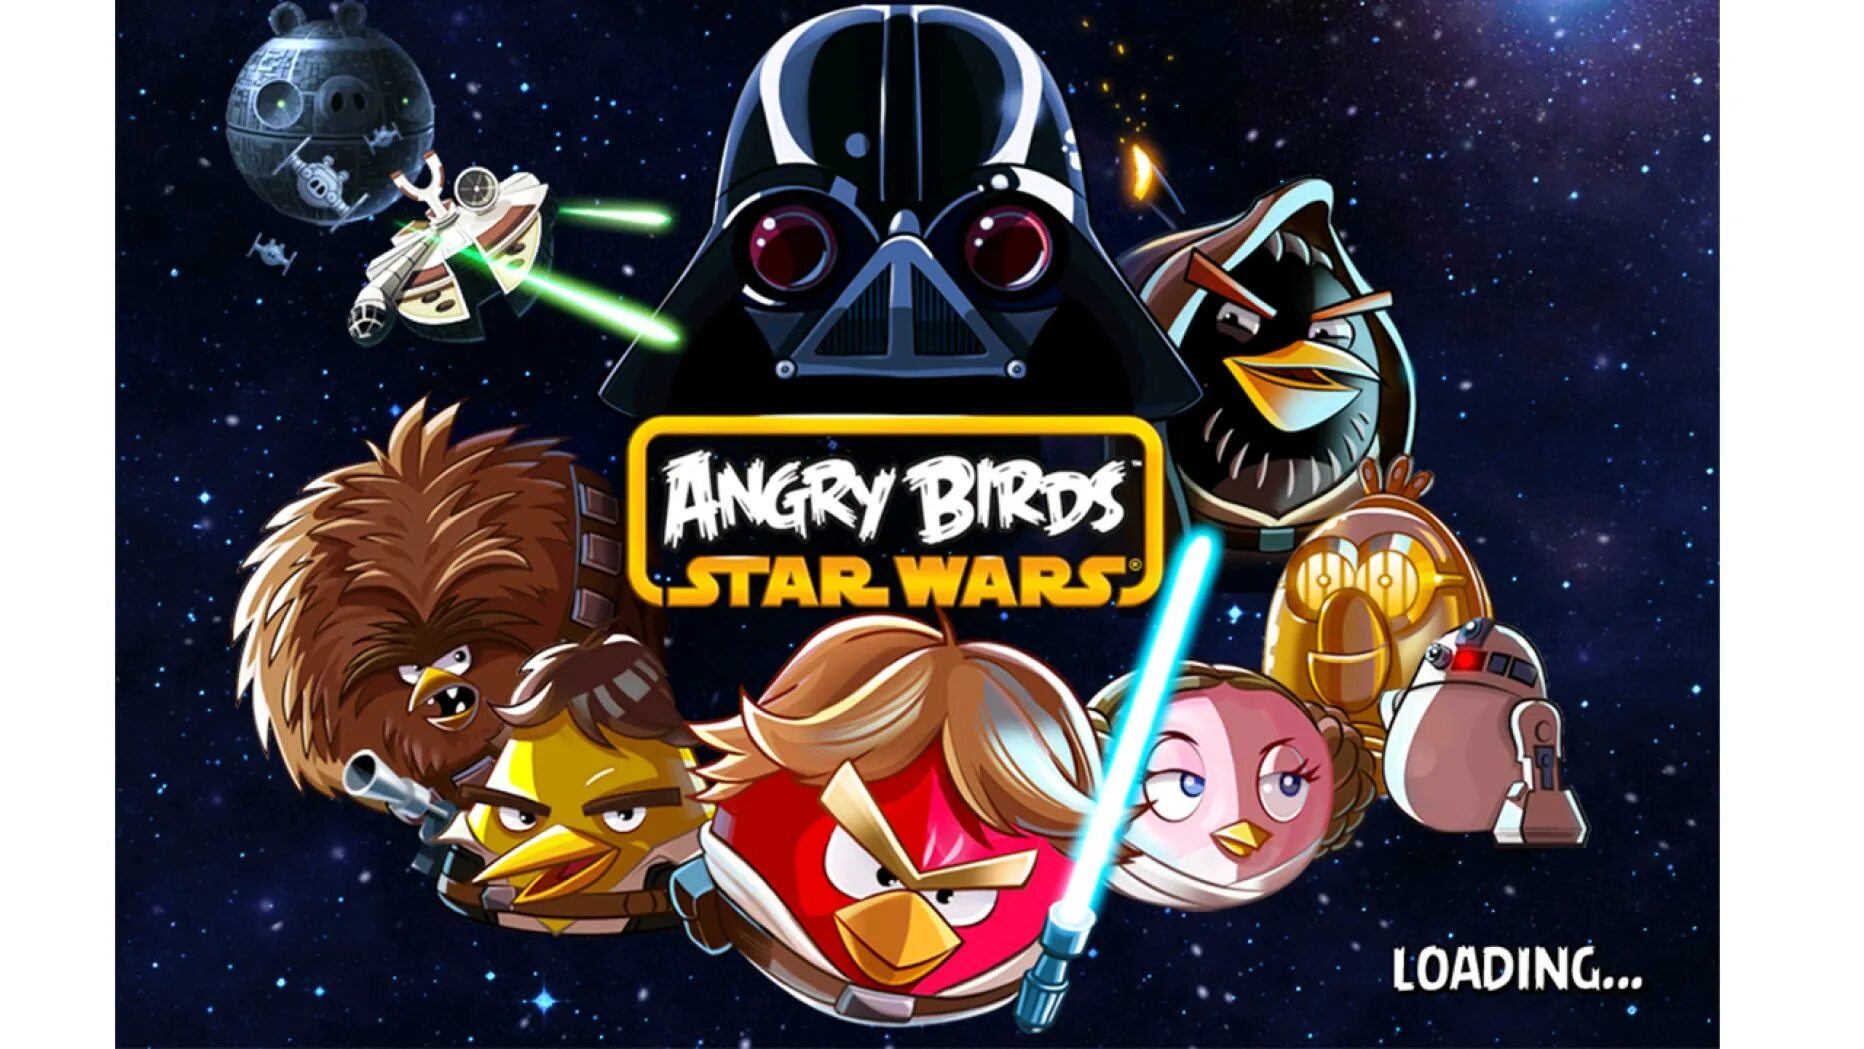 Энгри бёрдз Стар ВАРС 1. Энгри бердз Стар ВАРС 2 телепорт. Angry Birds Star Wars Xbox 360 обложка. Angry birds star wars андроид